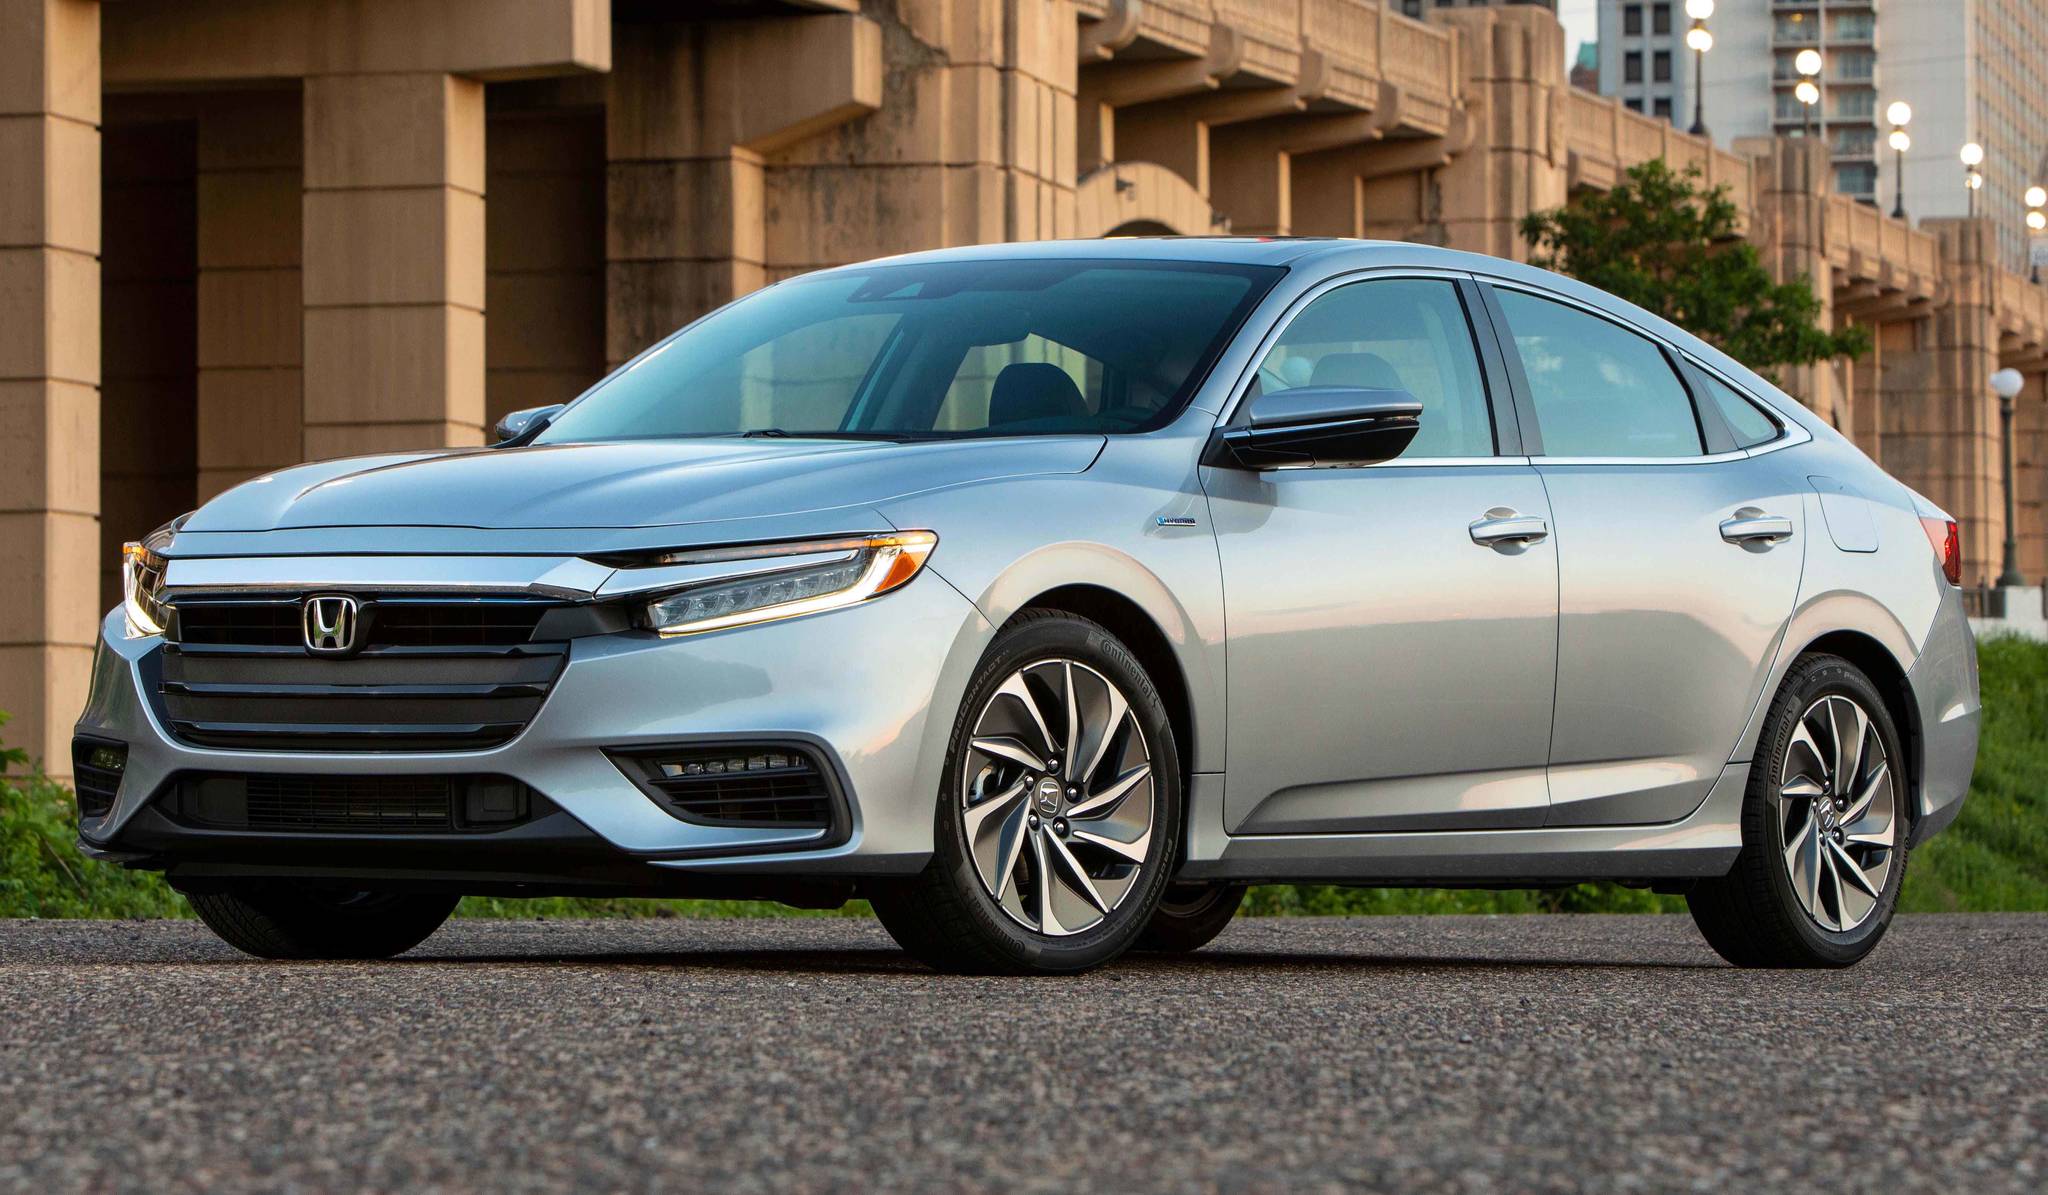 Car review: 2020 Honda Insight | Issaquah Reporter